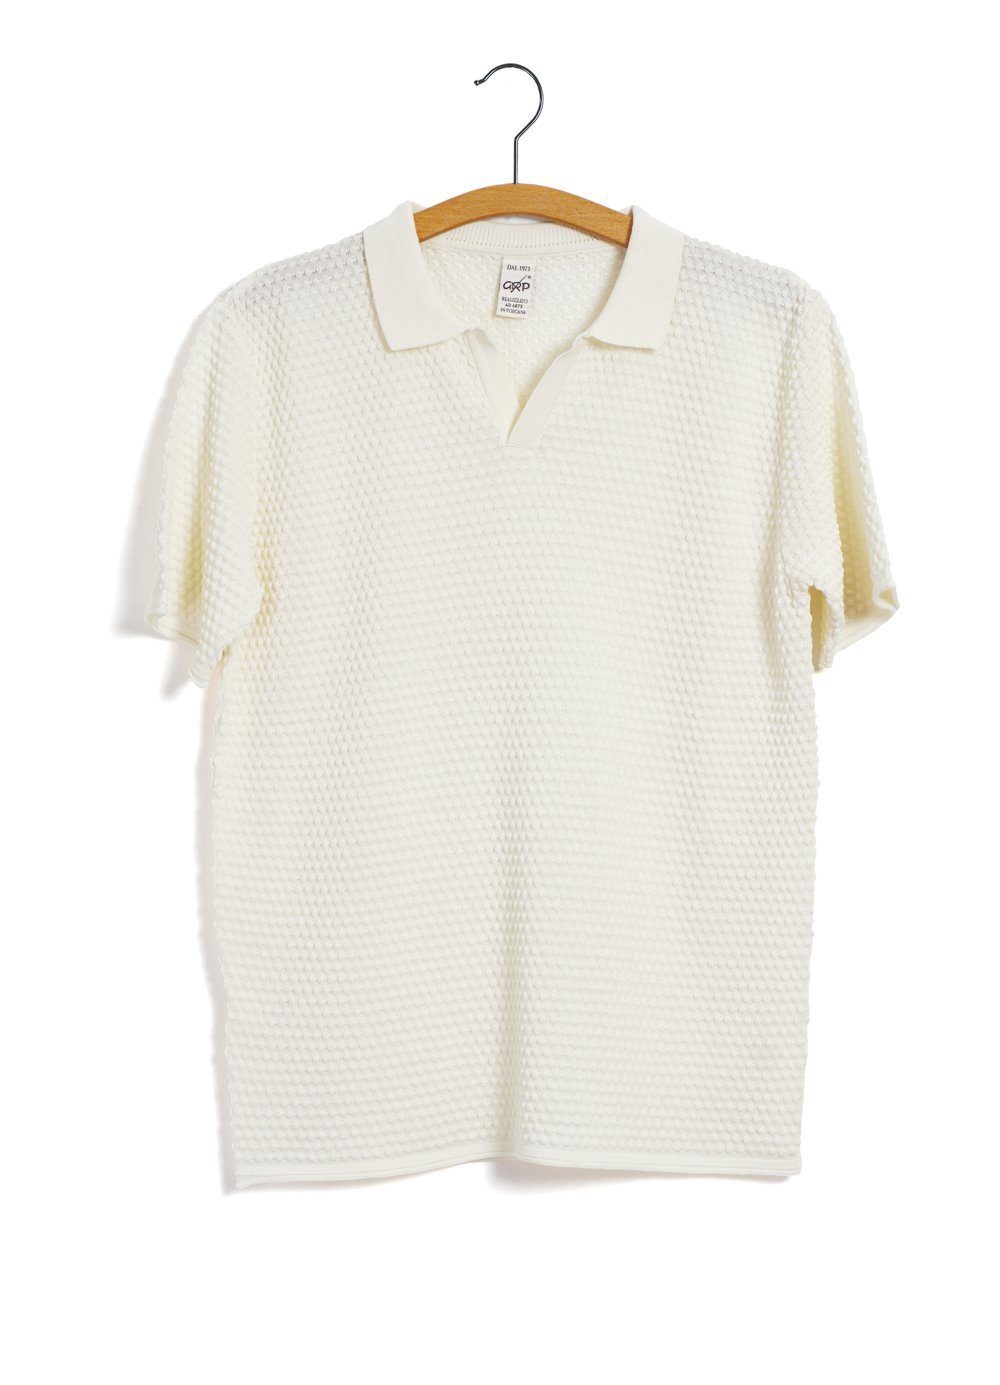 SOLD OUT - POLO | Short Sleeve Spot Knit Shirt | Ecru - HANSEN Garments